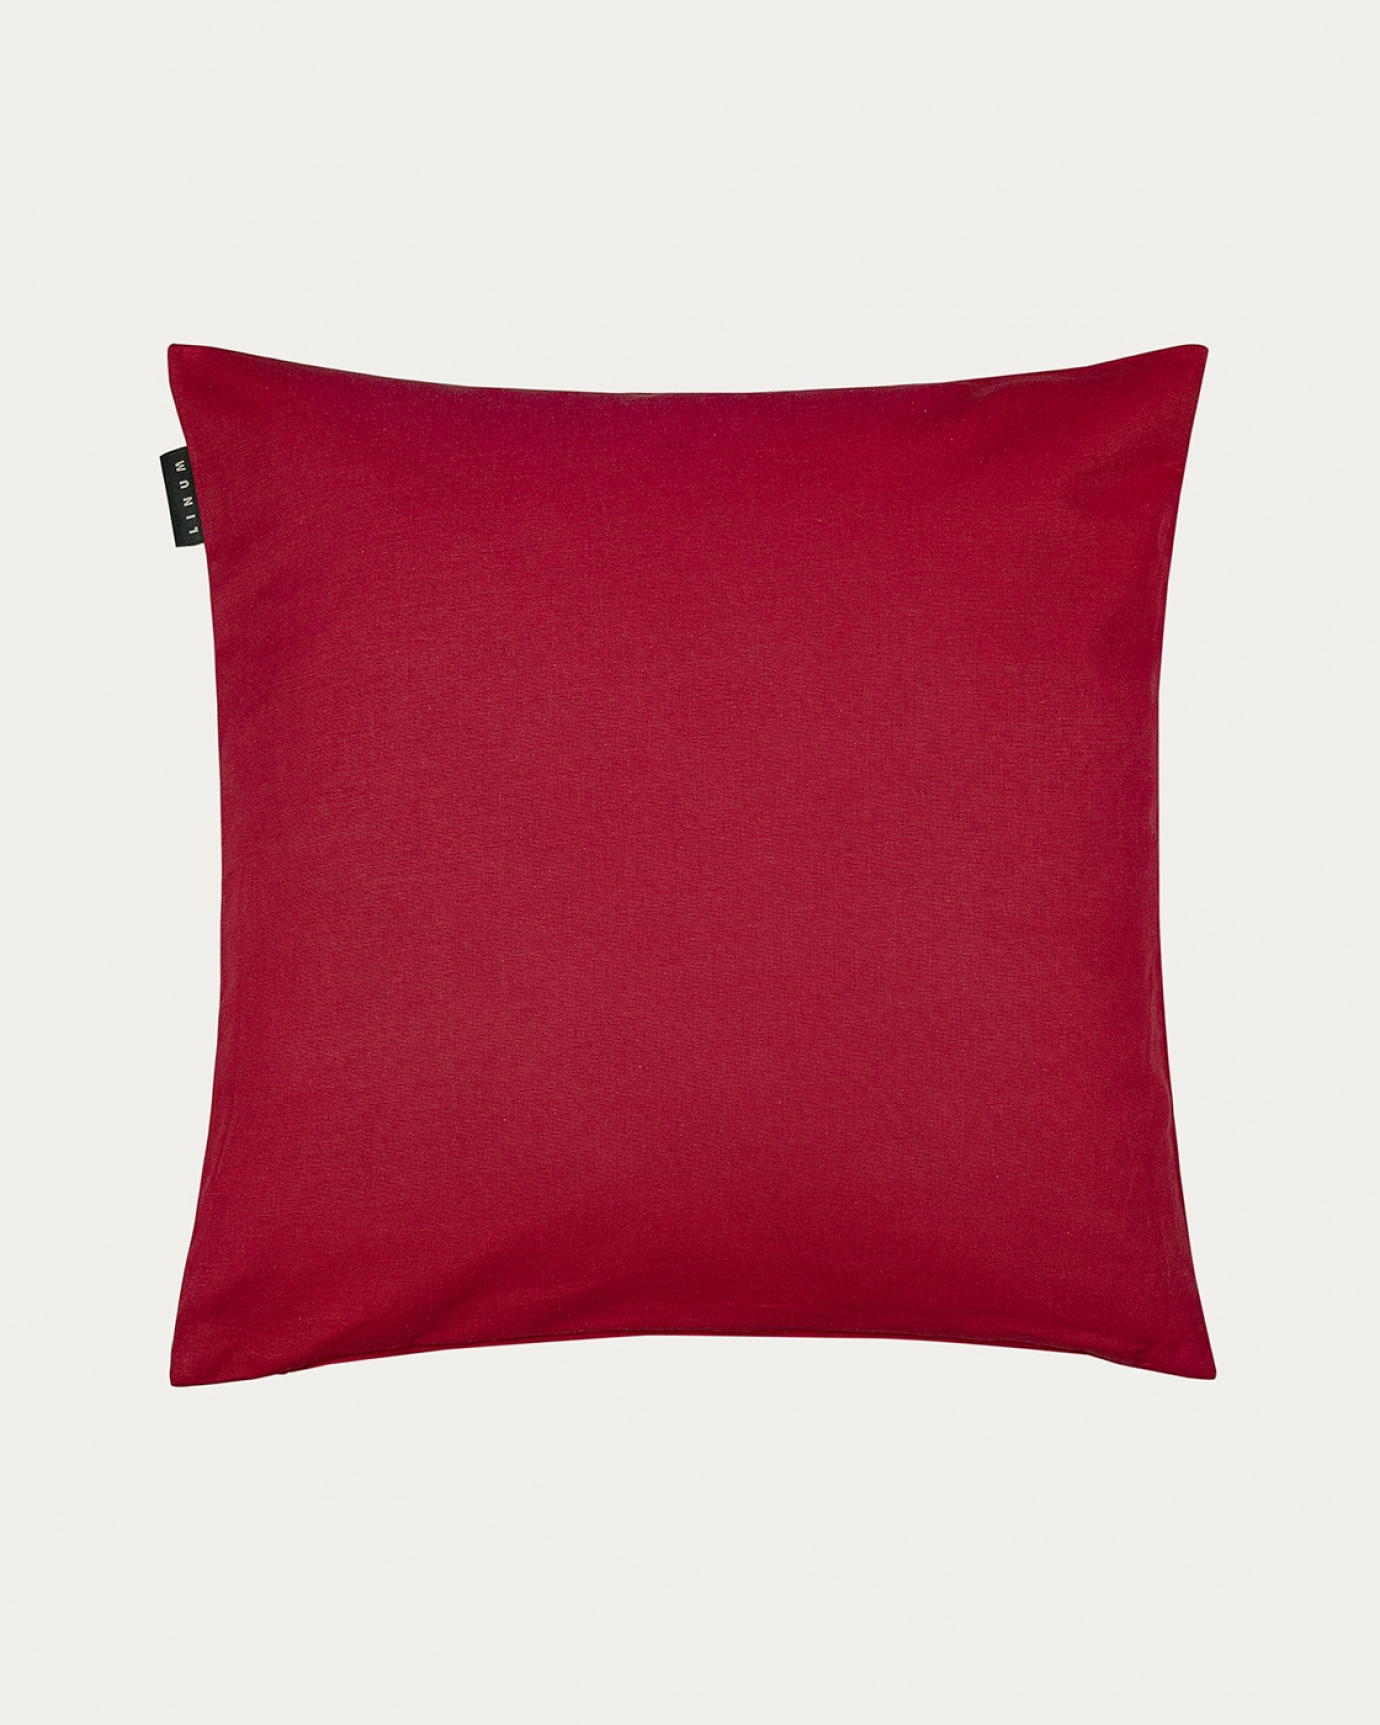 Produktbild rot ANNABELL Kissenhülle aus weicher Baumwolle von LINUM DESIGN. Größe 50x50 cm.